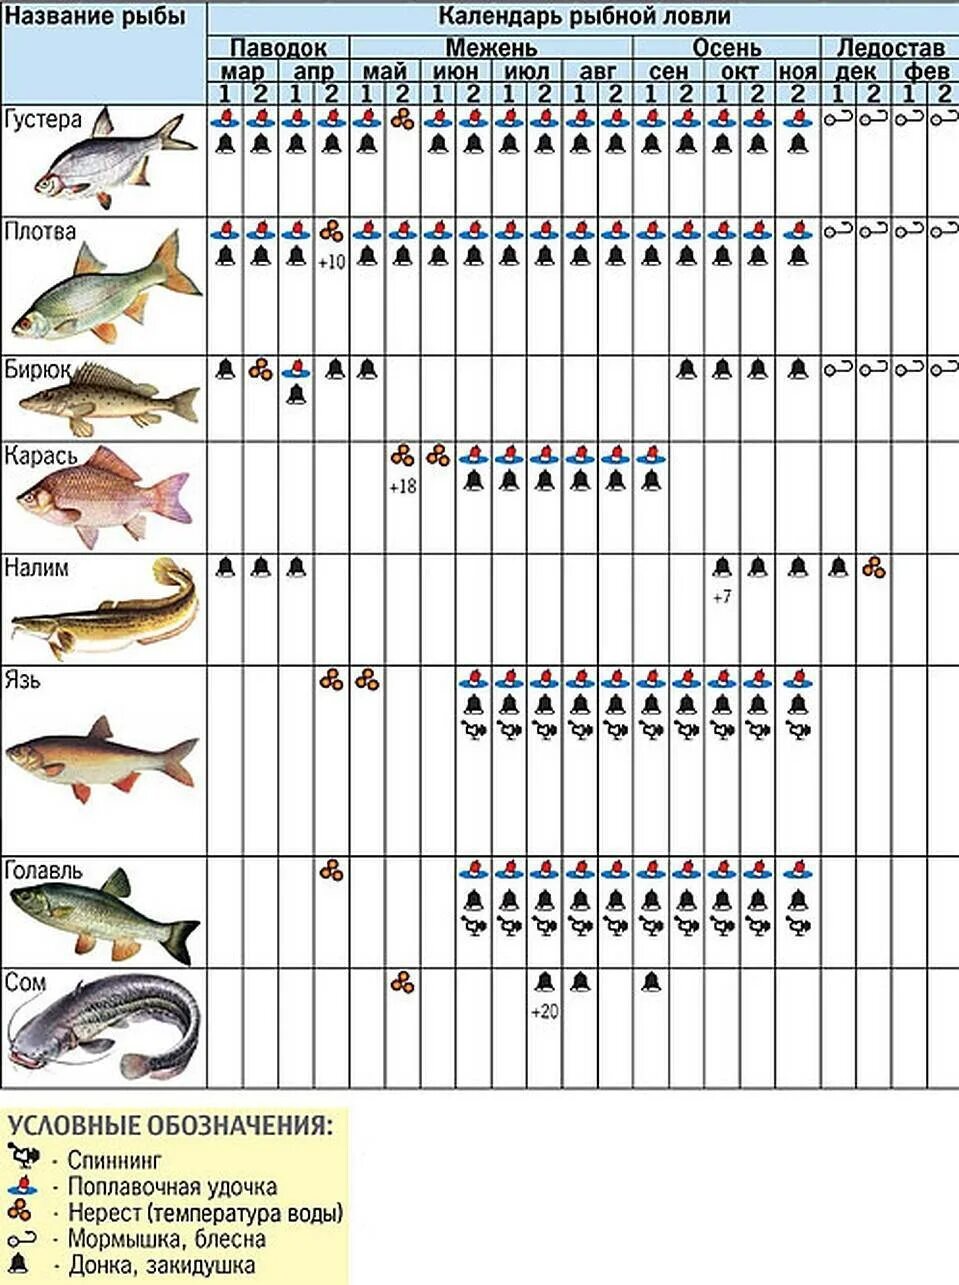 Какие рыбы можно поймать. Календарь рыбалки. На что можно лов ть рыбу. Календарь рыболова. Календарь ловли рыбы.